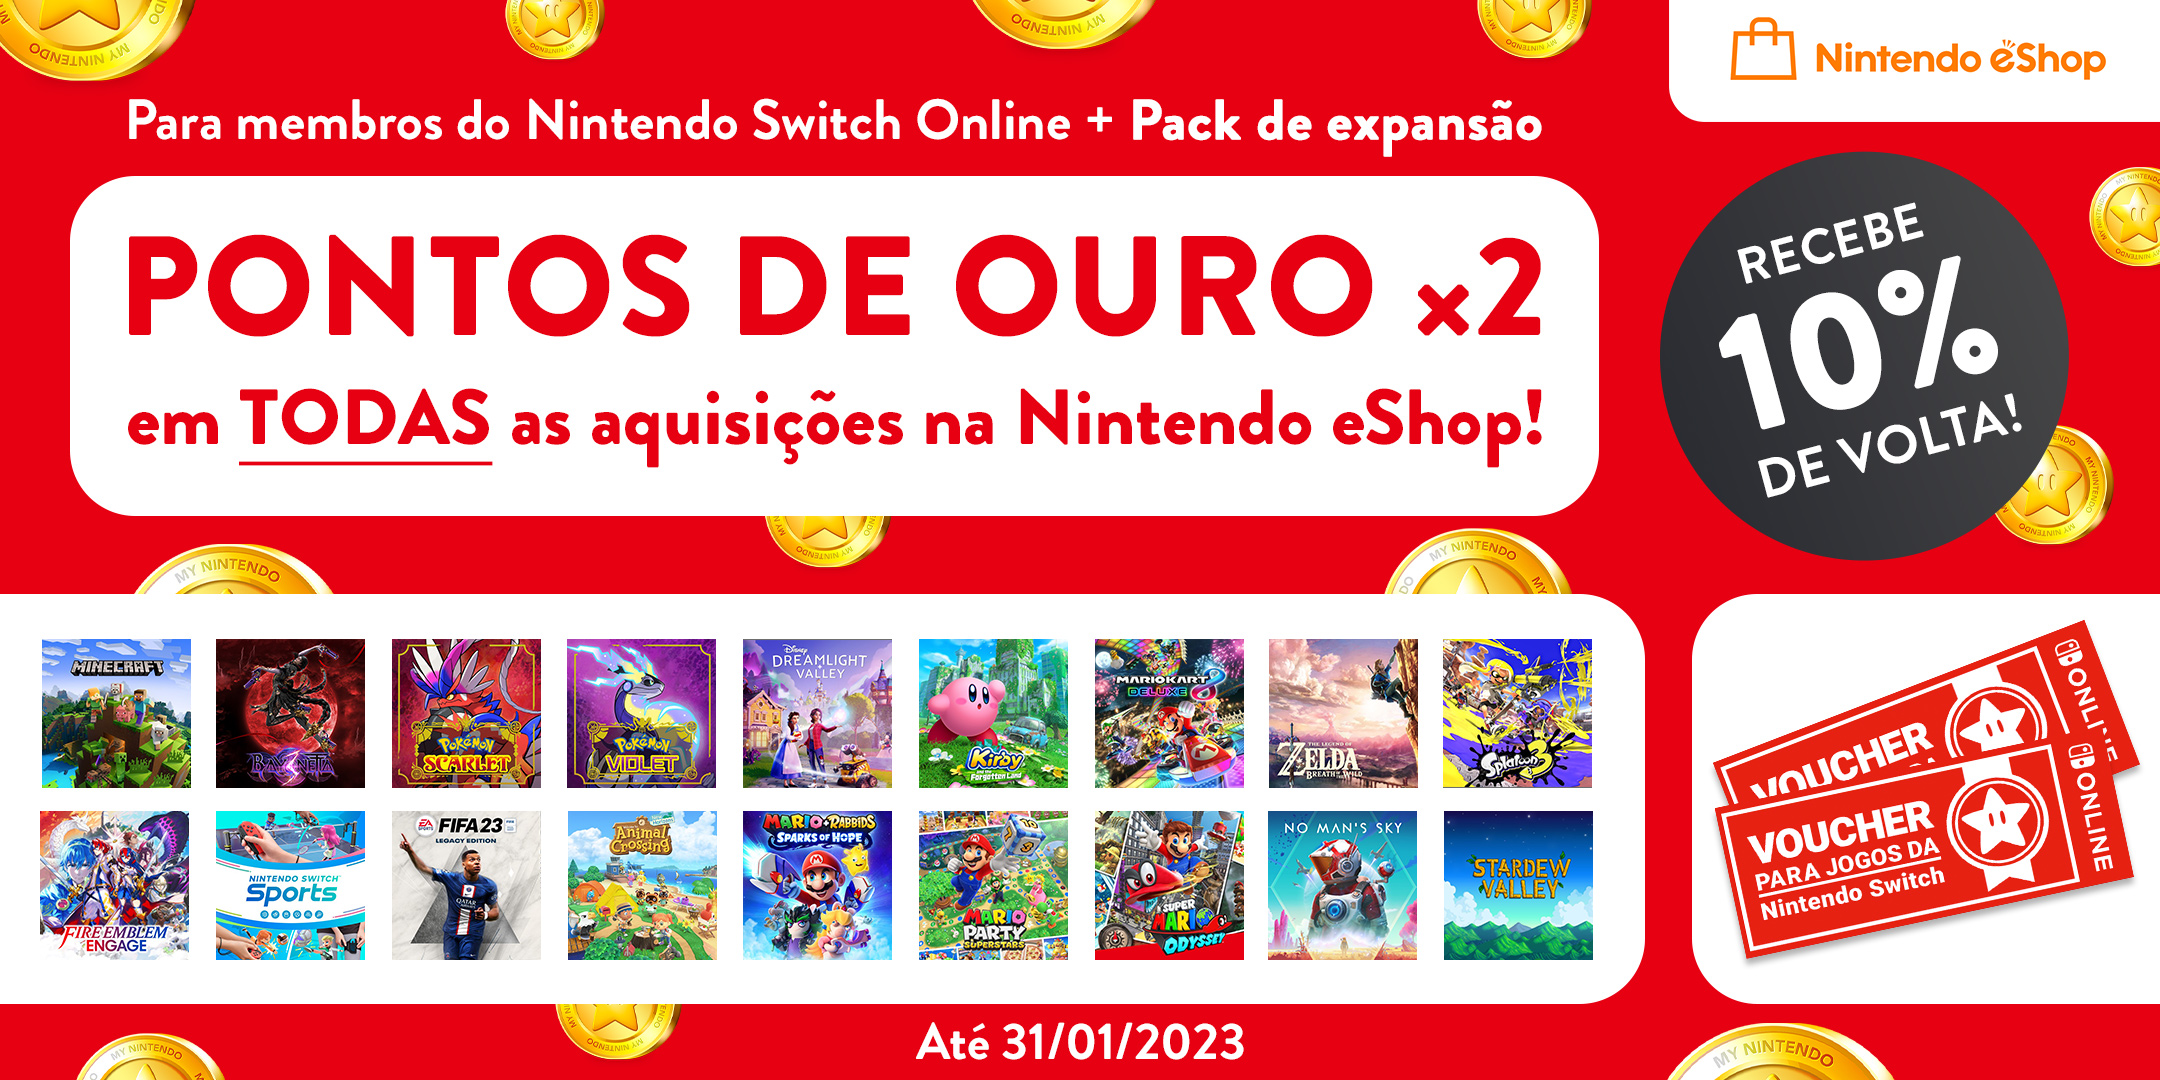 Pontos de Ouro a dobrar para os membros do Nintendo Switch Online + Pack de expansão 